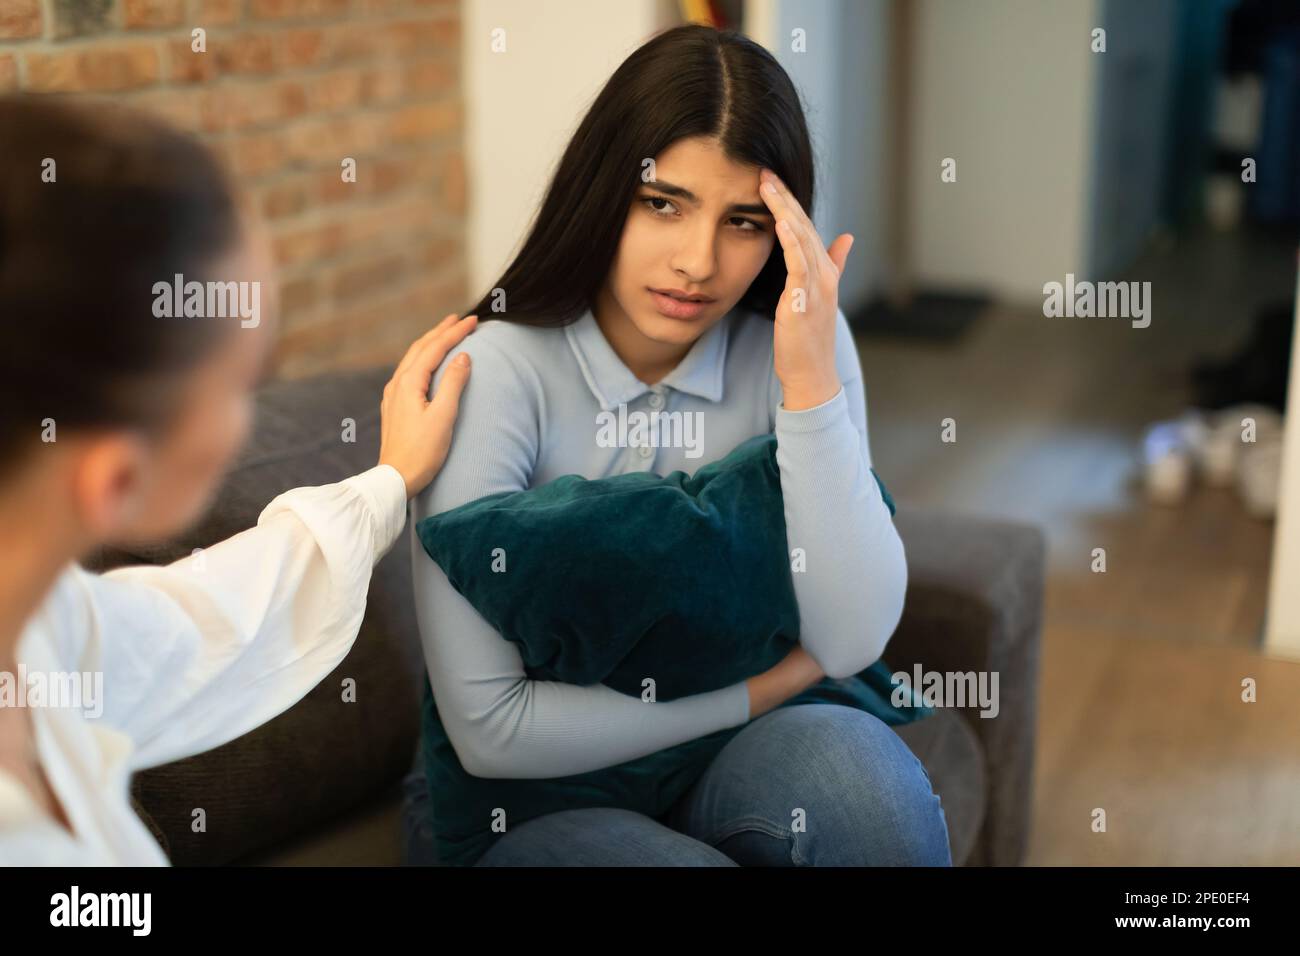 Signora teen infelice che ha problema, abbracciando cuscino e parlando con un amico che mostra compassione e cercando di appagare Foto Stock